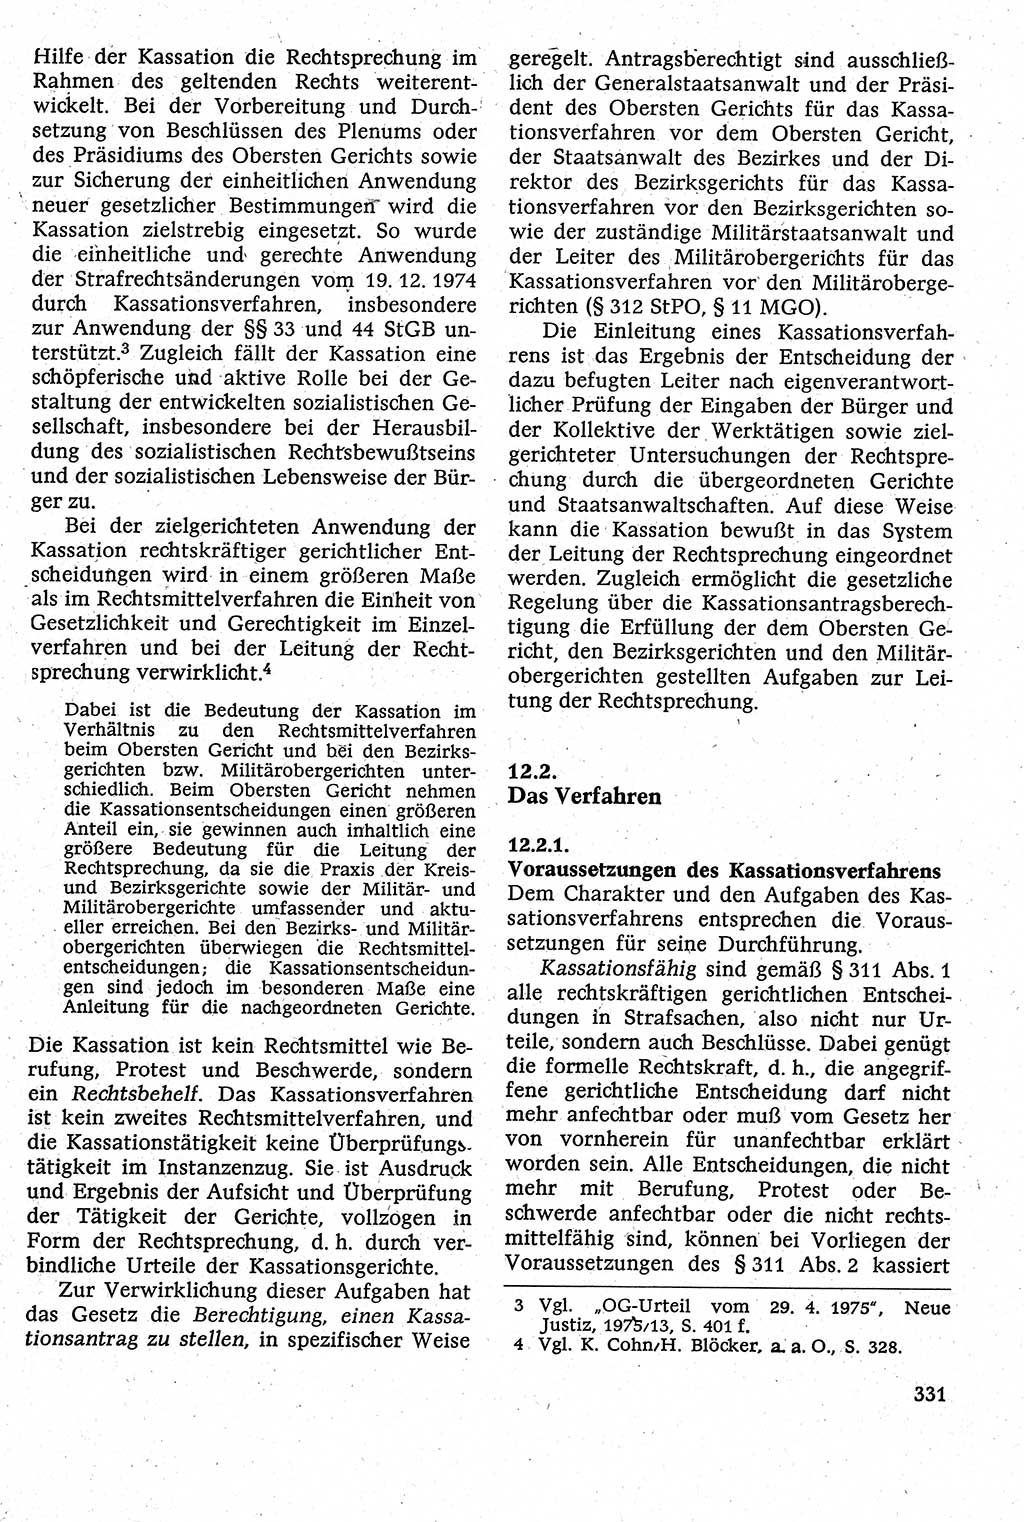 Strafverfahrensrecht [Deutsche Demokratische Republik (DDR)], Lehrbuch 1982, Seite 331 (Strafverf.-R. DDR Lb. 1982, S. 331)